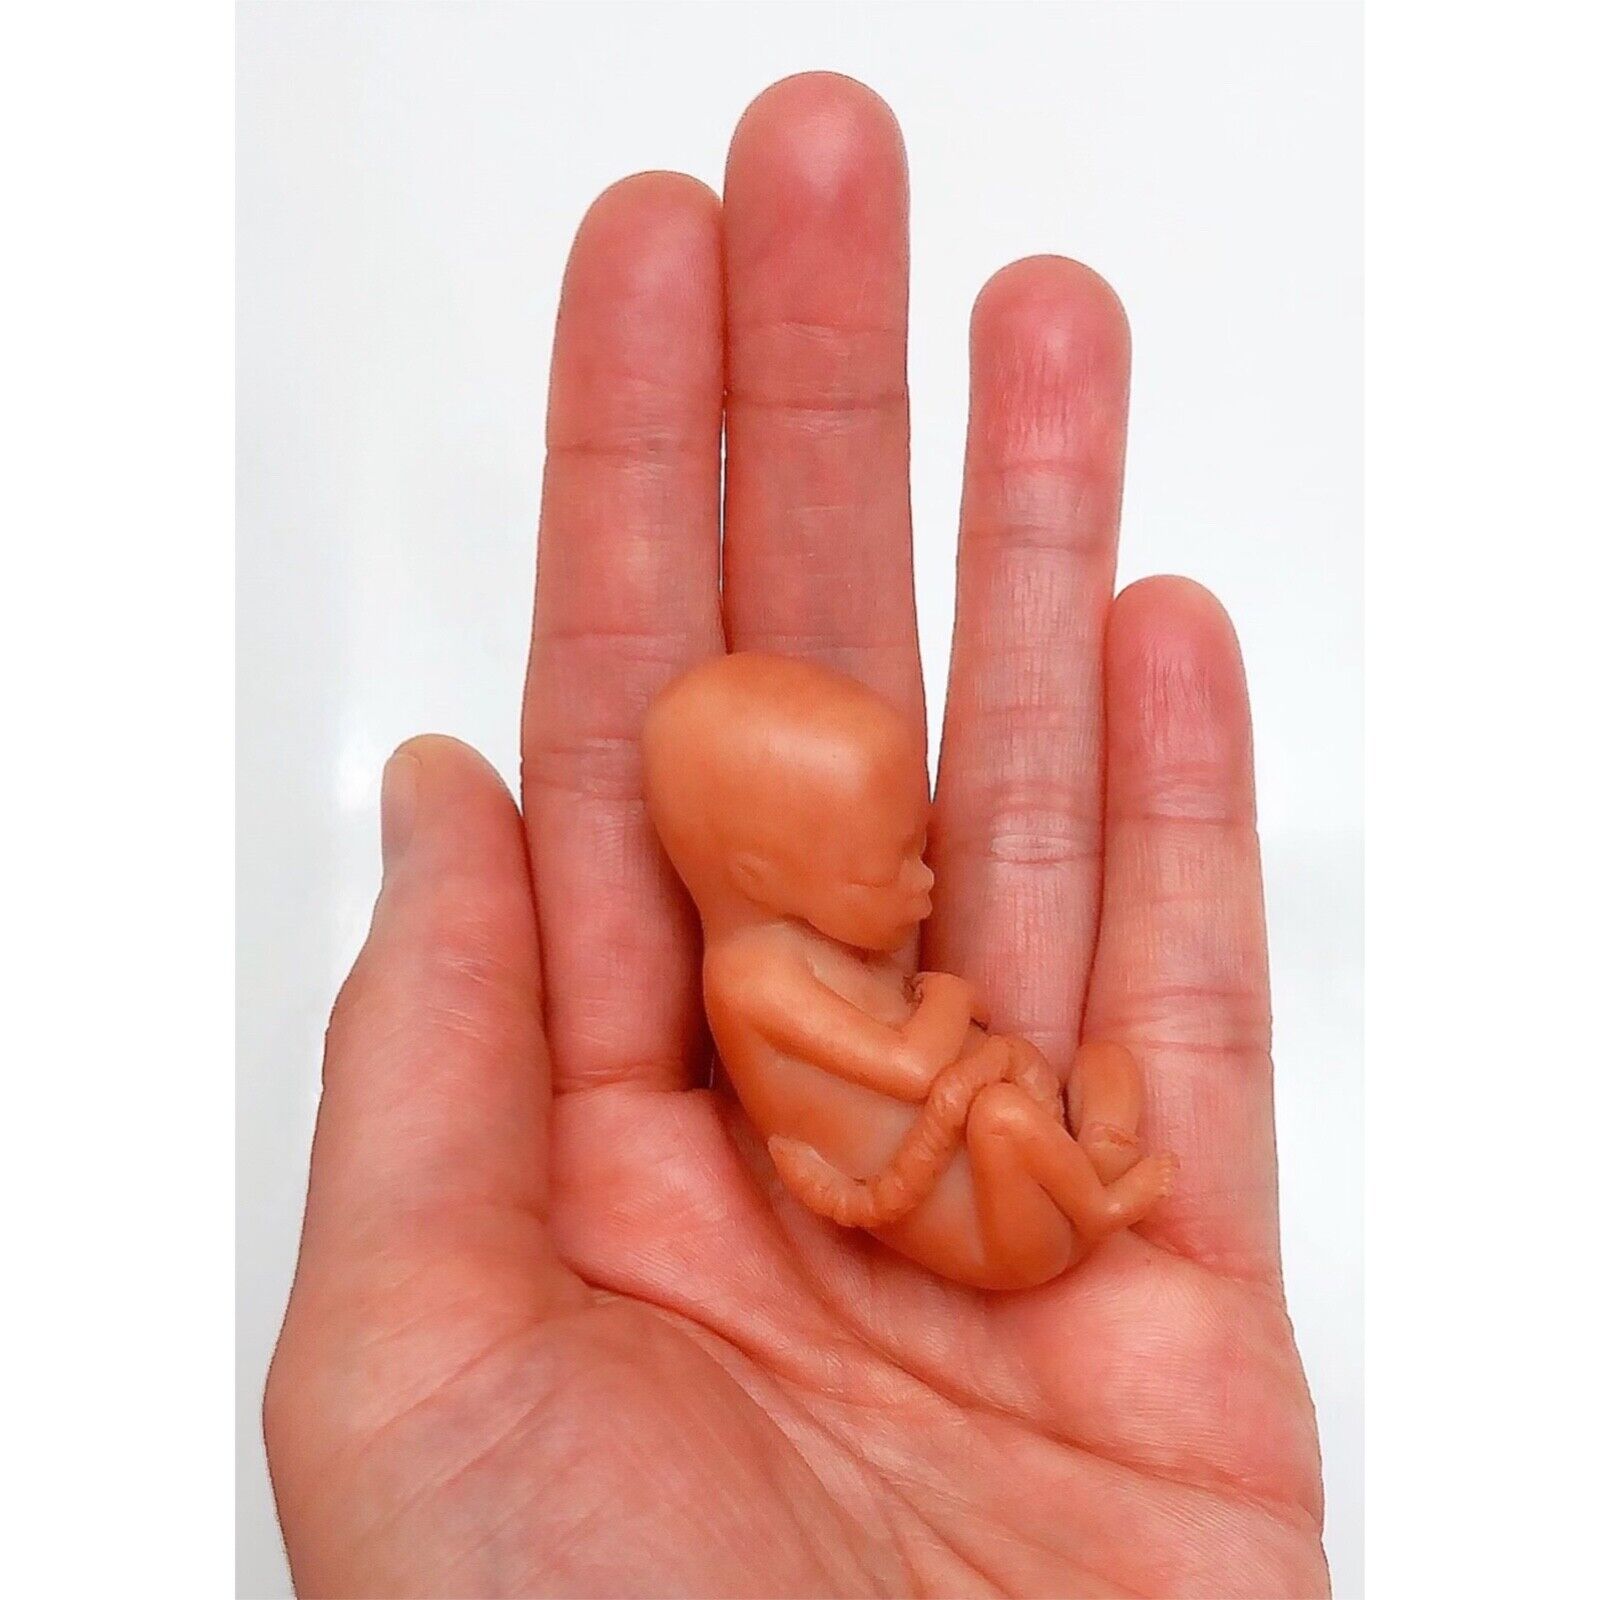 13 Weeks Baby Fetus, Stage of Fetal Development (Memorial/Miscarriage/Keepsake)